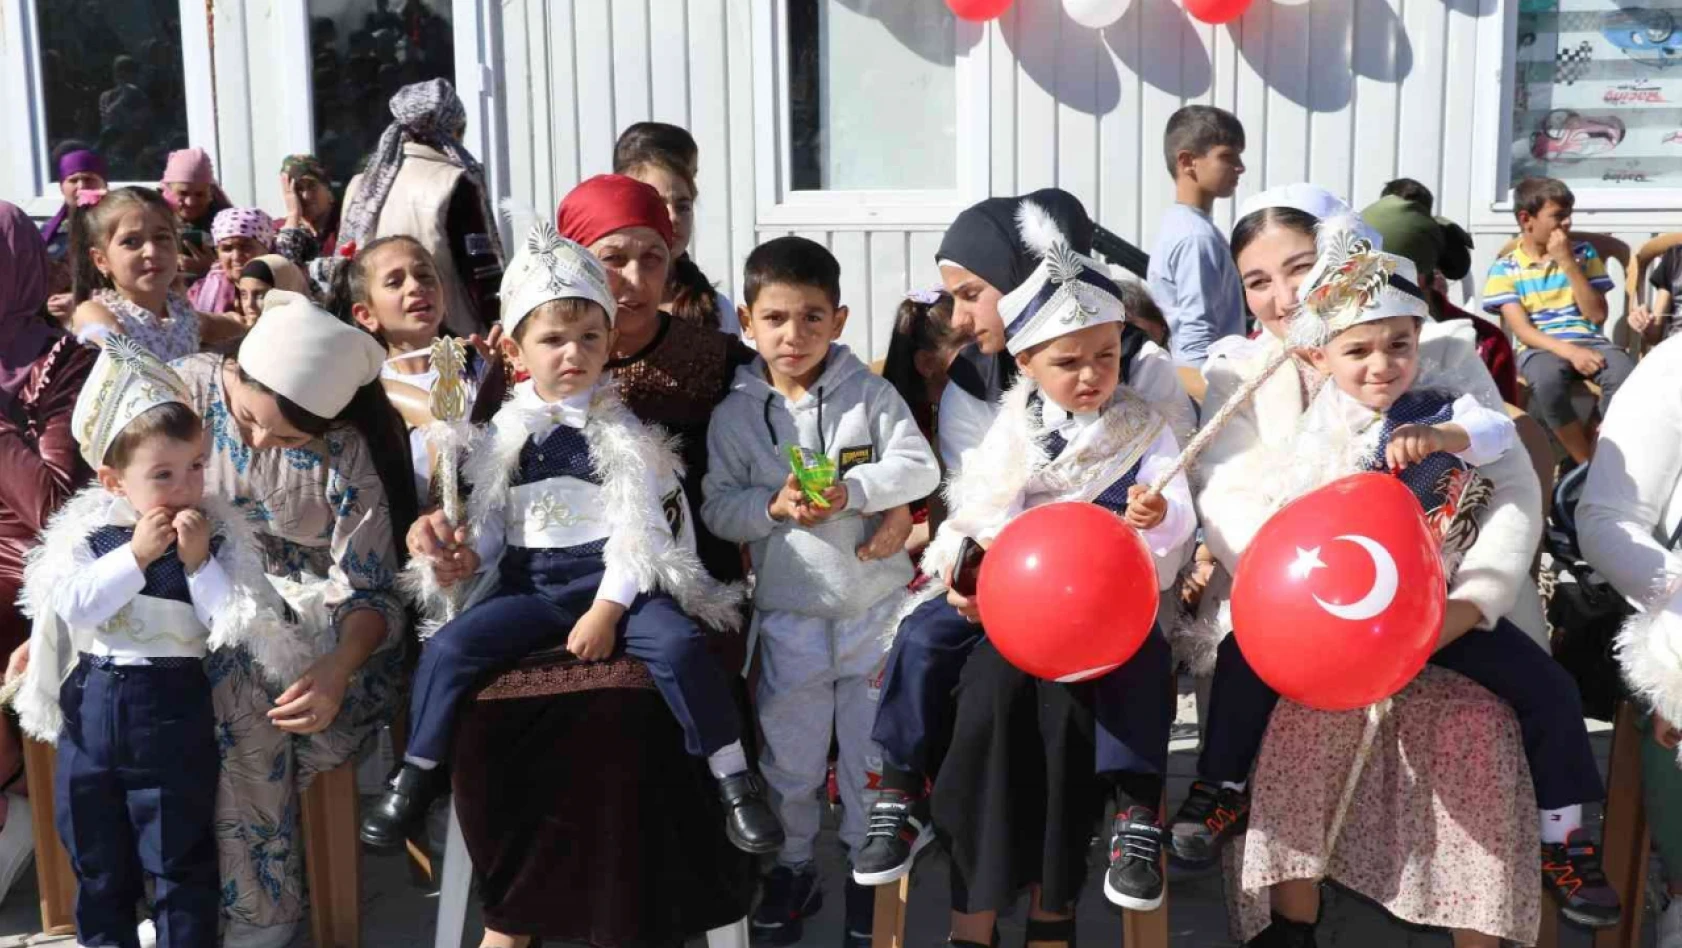 Elazığ'da Ahıska Türkü çocuklar için toplu sünnet töreni düzenlendi